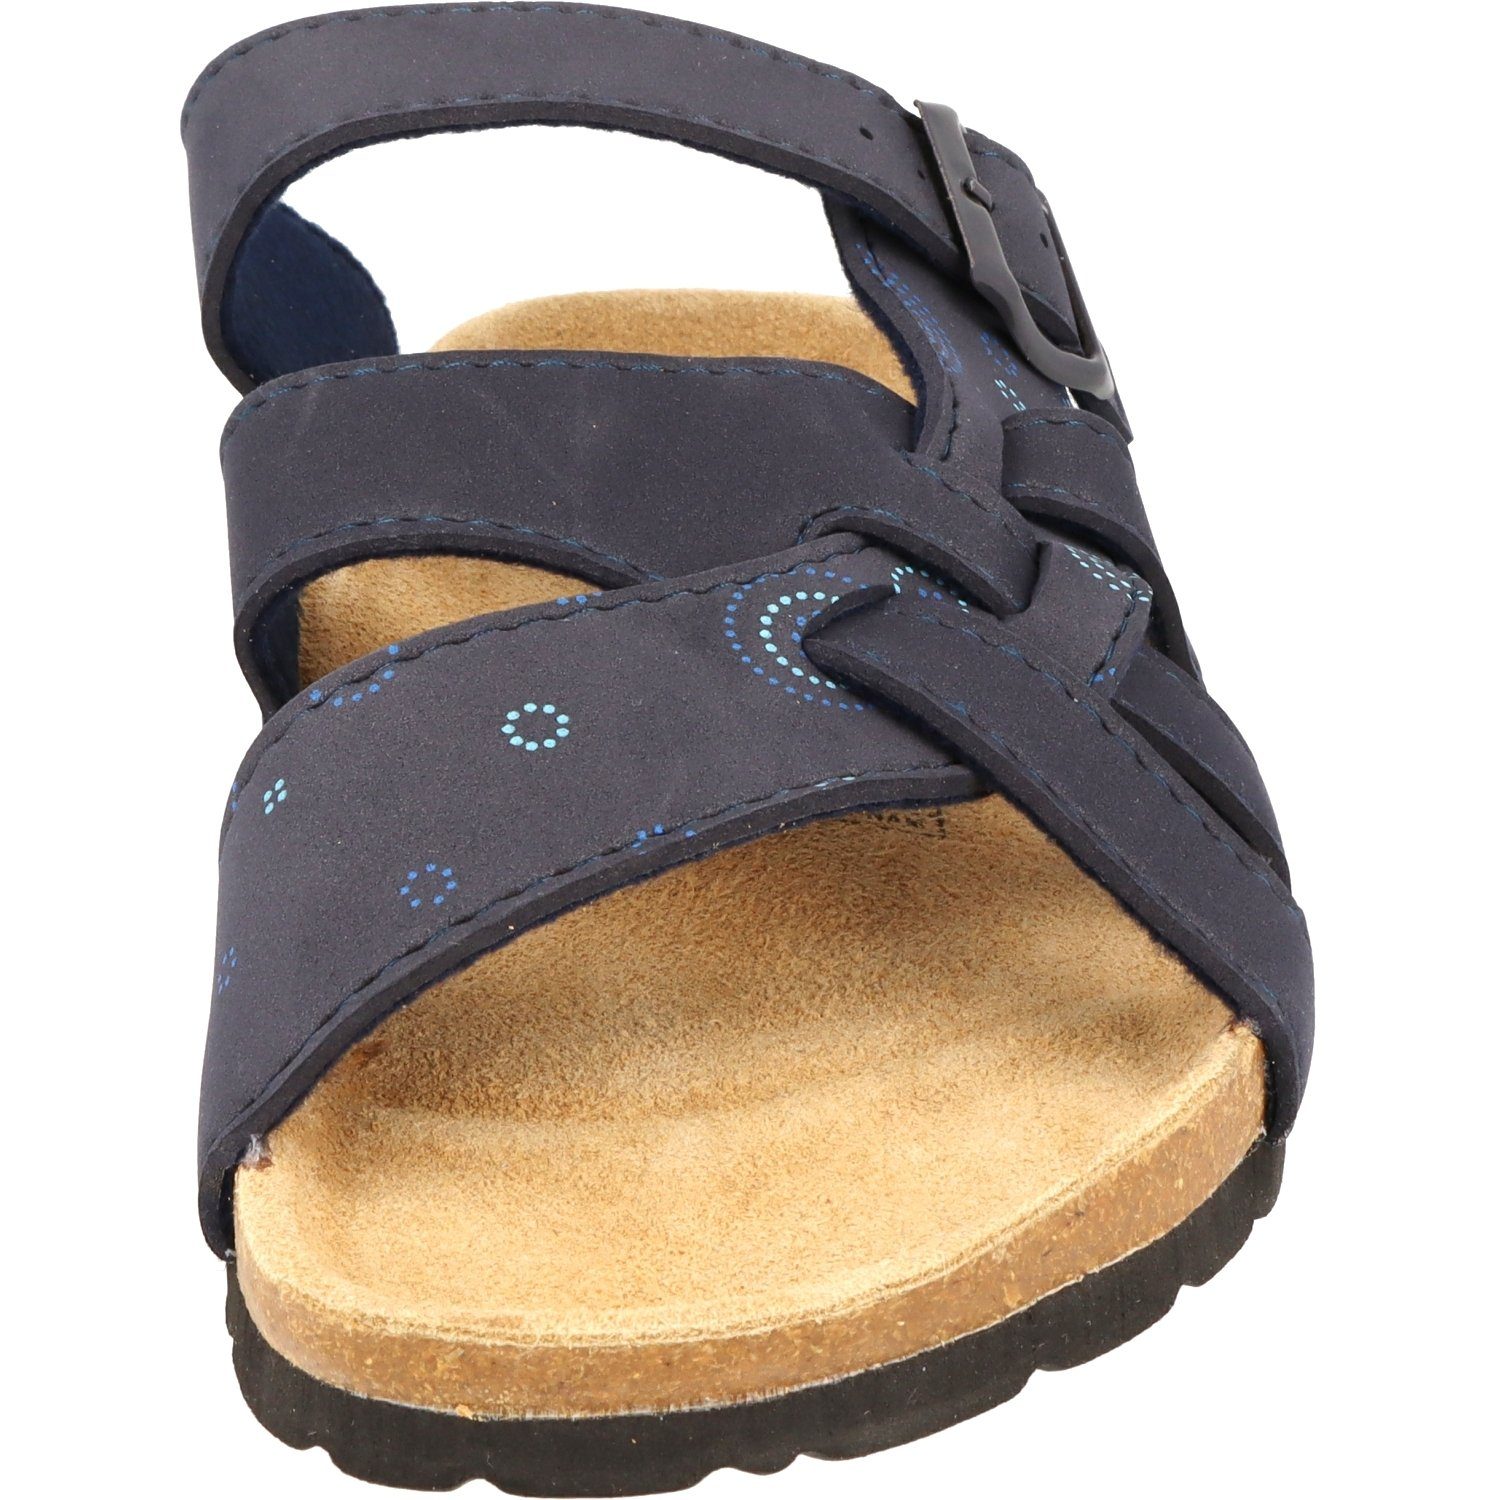 Cloxx Damen Schuhe T67913 Dunkelblau Sandale Hausschuhe Lederfußbett Pantolette